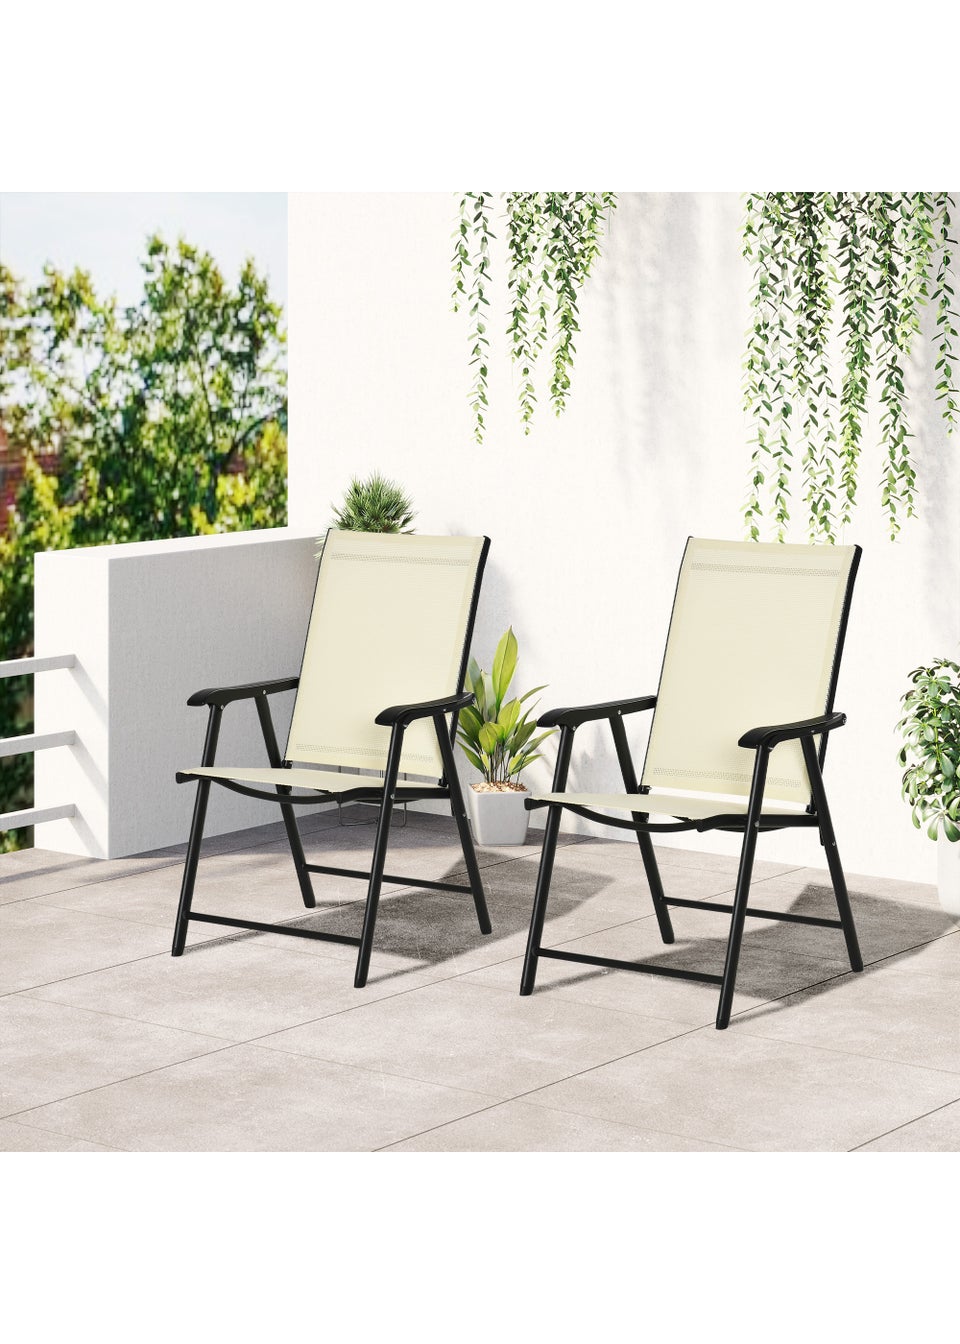 Outsunny 2 PCs Foldable Garden Chairs  (58cm x 64cm x 94cm)